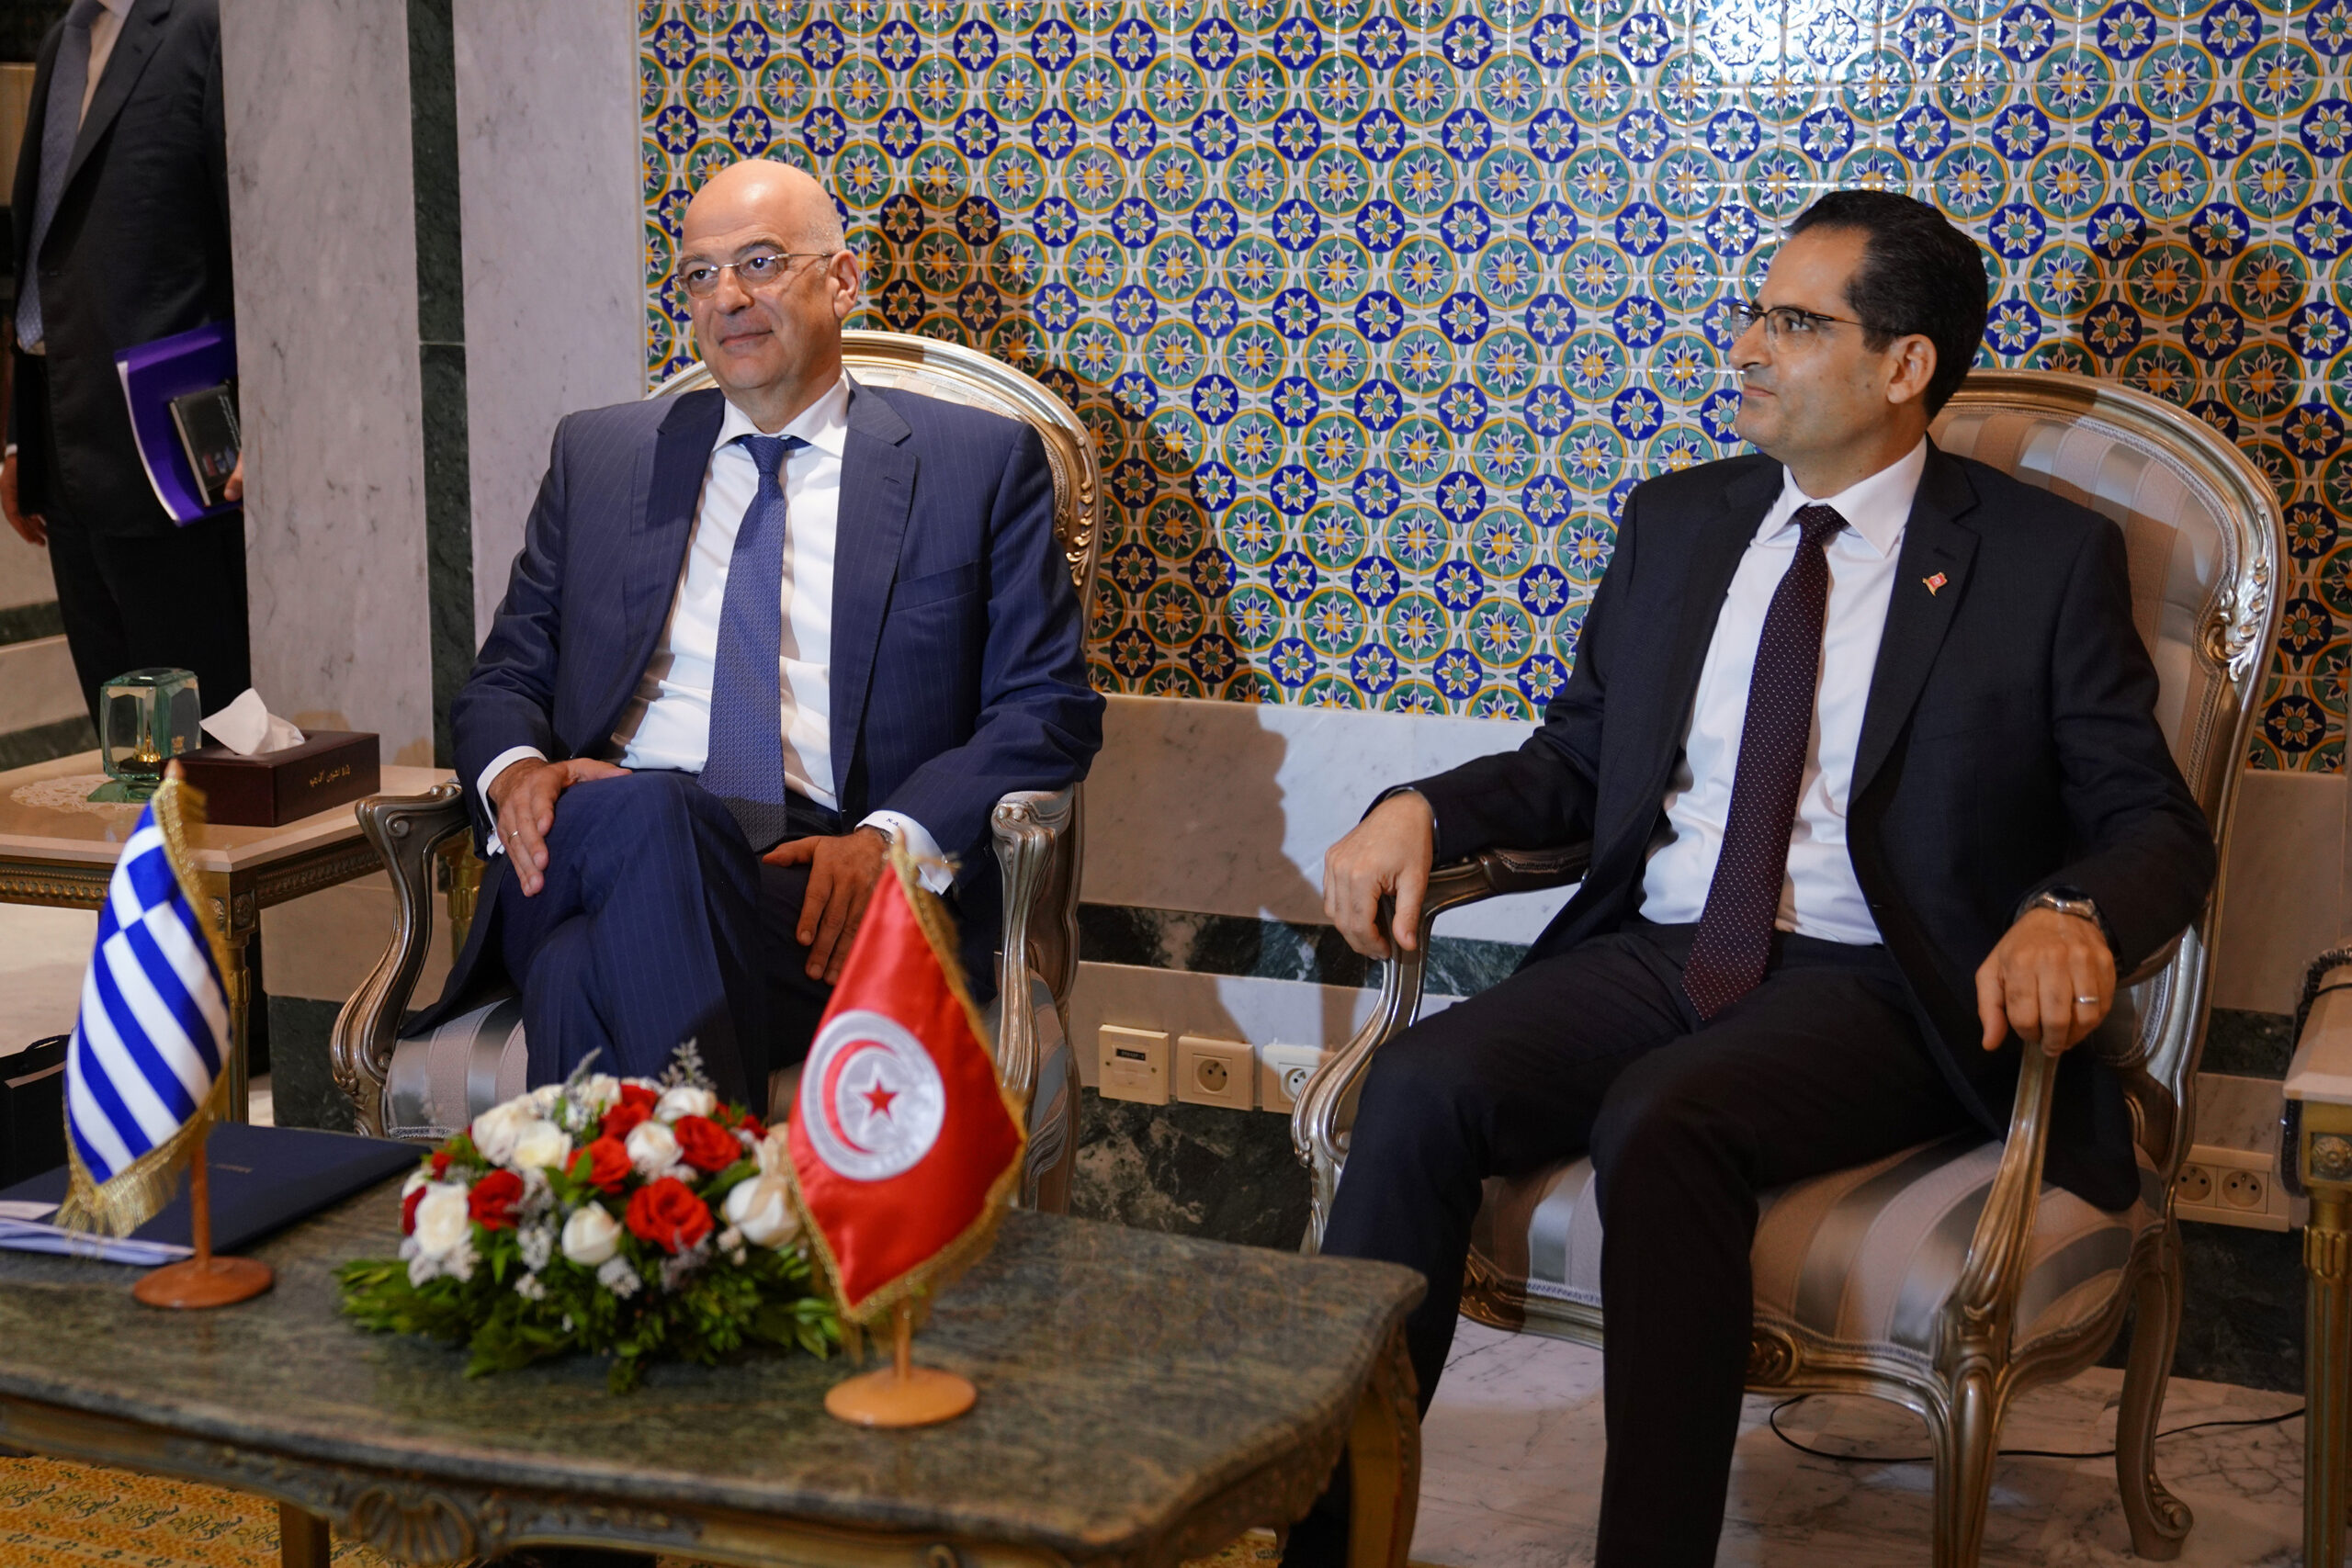 Επίσκεψη Υπουργού Εξωτερικών, Νίκου Δένδια, στην Τυνησία. Συνάντηση και συνομιλίες με  τον ομόλογό του, Noureddine Erray. (Τύνιδα, 29.06.2020)